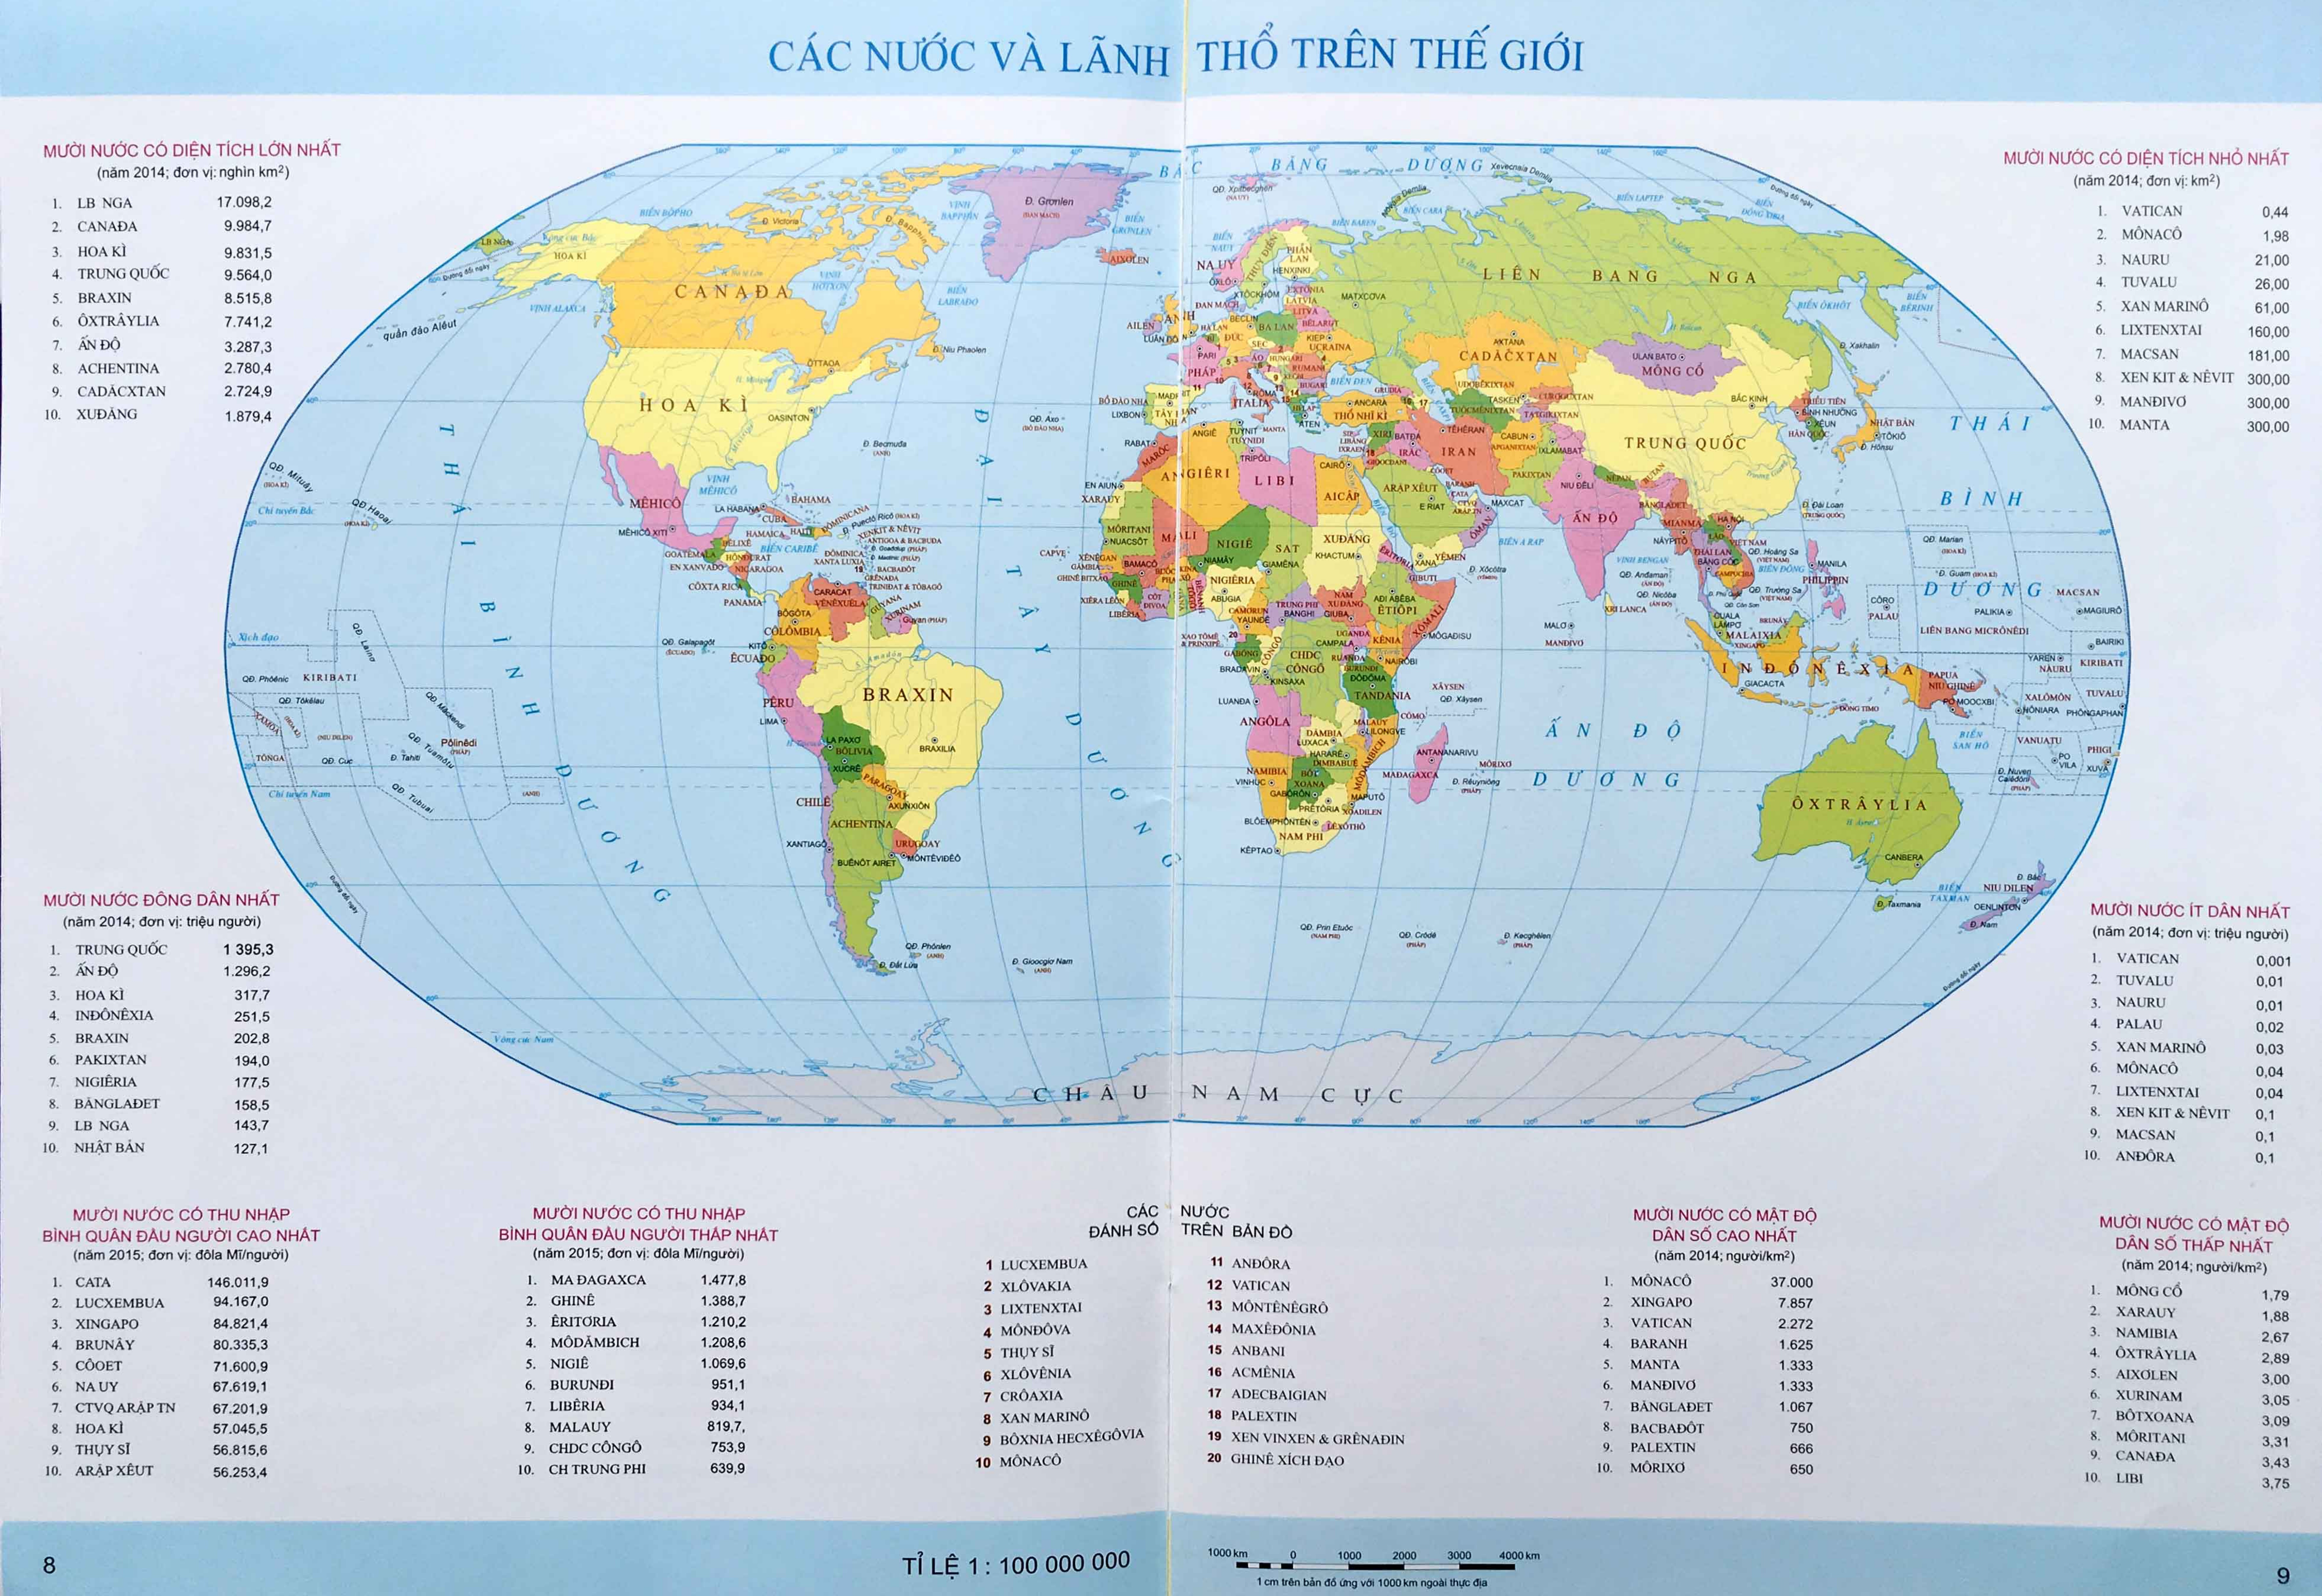 Mẫu bản đồ thế giới độ phân giải cao: Trải nghiệm sự tinh tế và chân thực của mẫu bản đồ thế giới độ phân giải cao. Được tạo ra với công nghệ tiên tiến, mẫu bản đồ này cho phép bạn khám phá thế giới ở mức độ chi tiết chưa từng thấy trước đây.